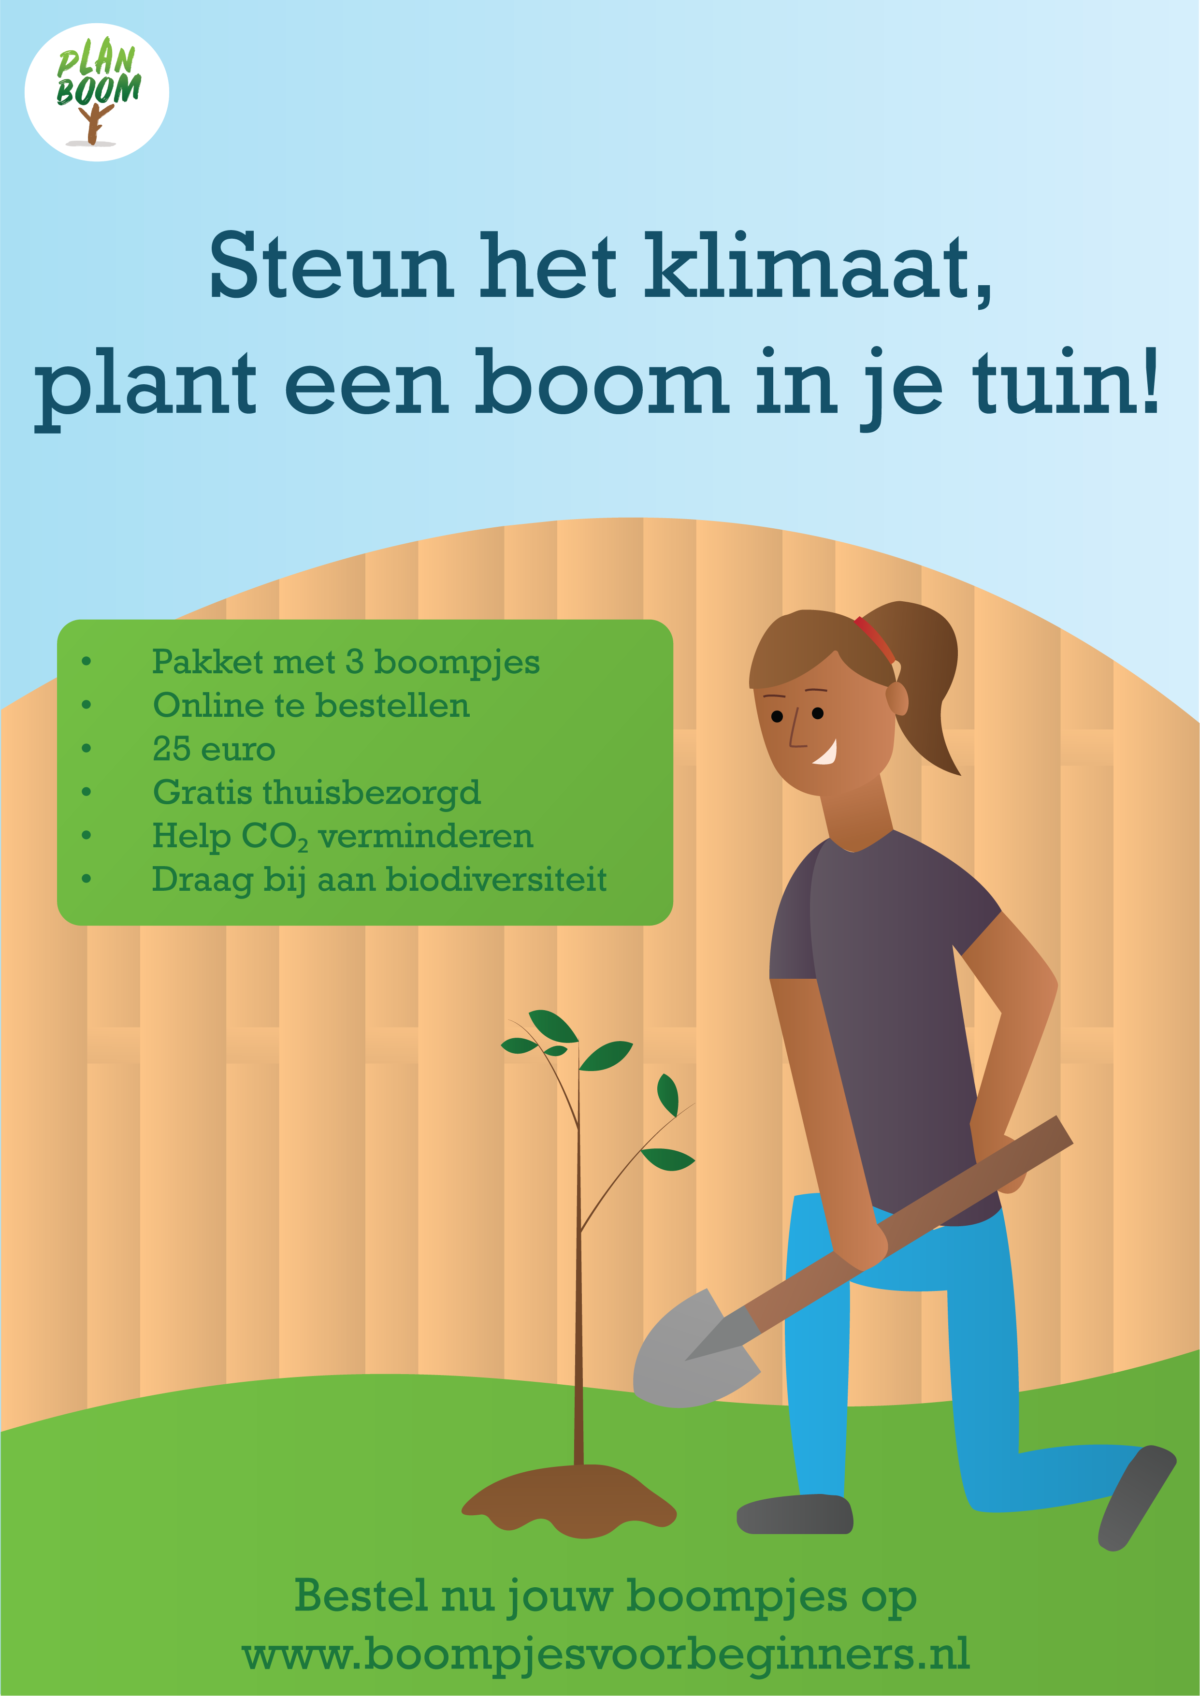 Steun het klimaat en plant een boom! Pakket Boompjes voor beginners verkrijgbaar bij Plan Boom